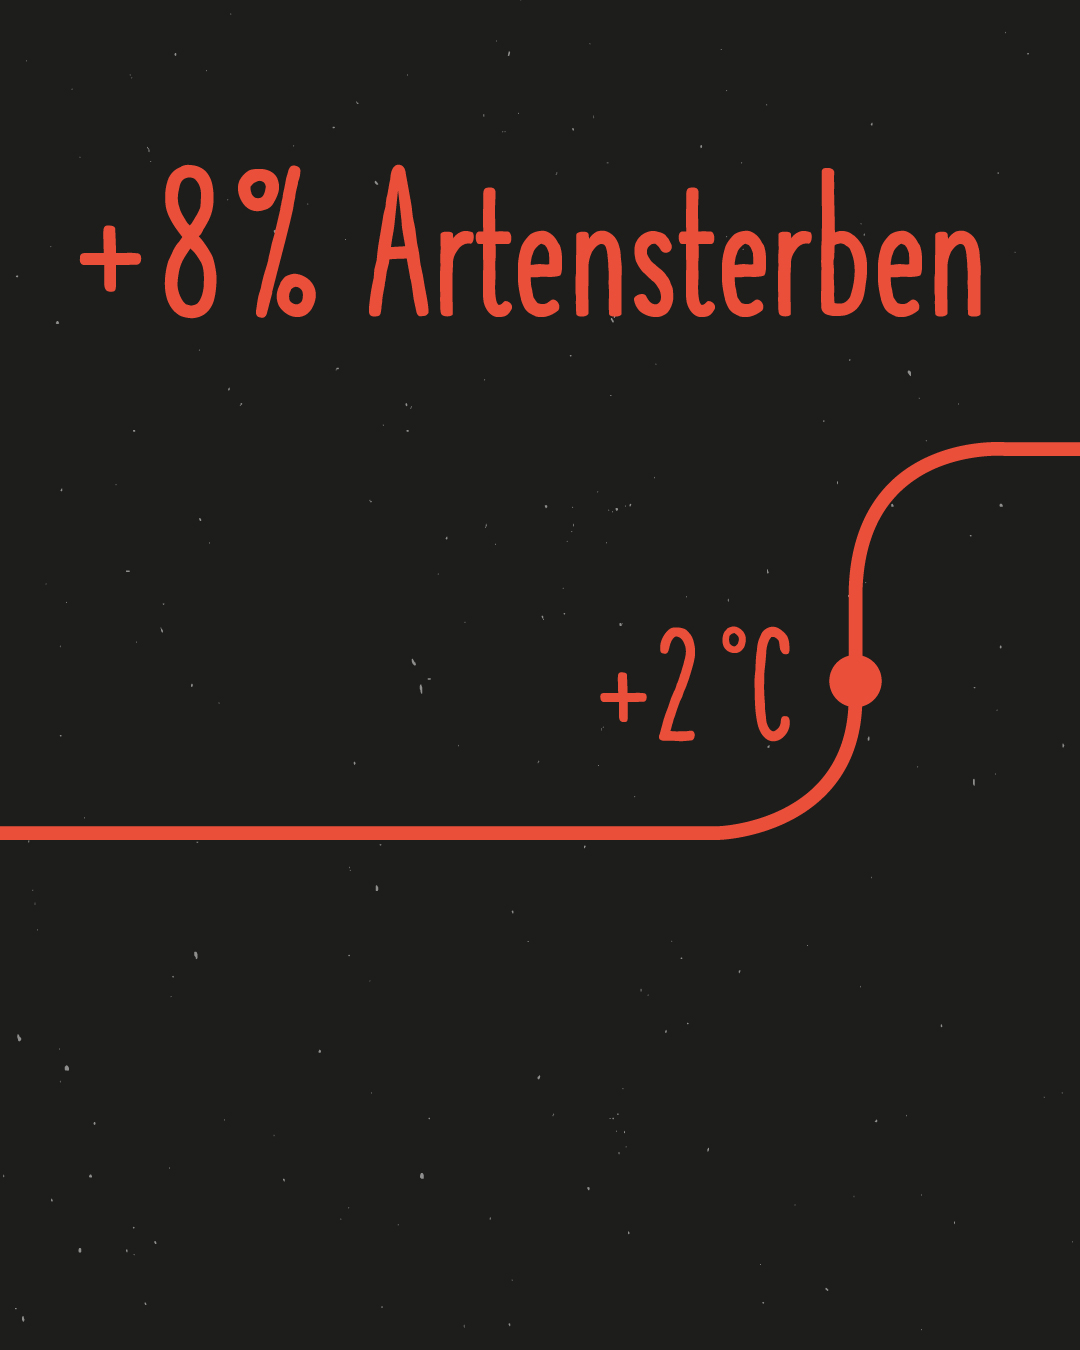 rot auf schwarzem Hintergrund: +8% Artensterben? Unten im Bild verläuft eine rote waagrechte Linie mit der Bezeichnung +2 °C